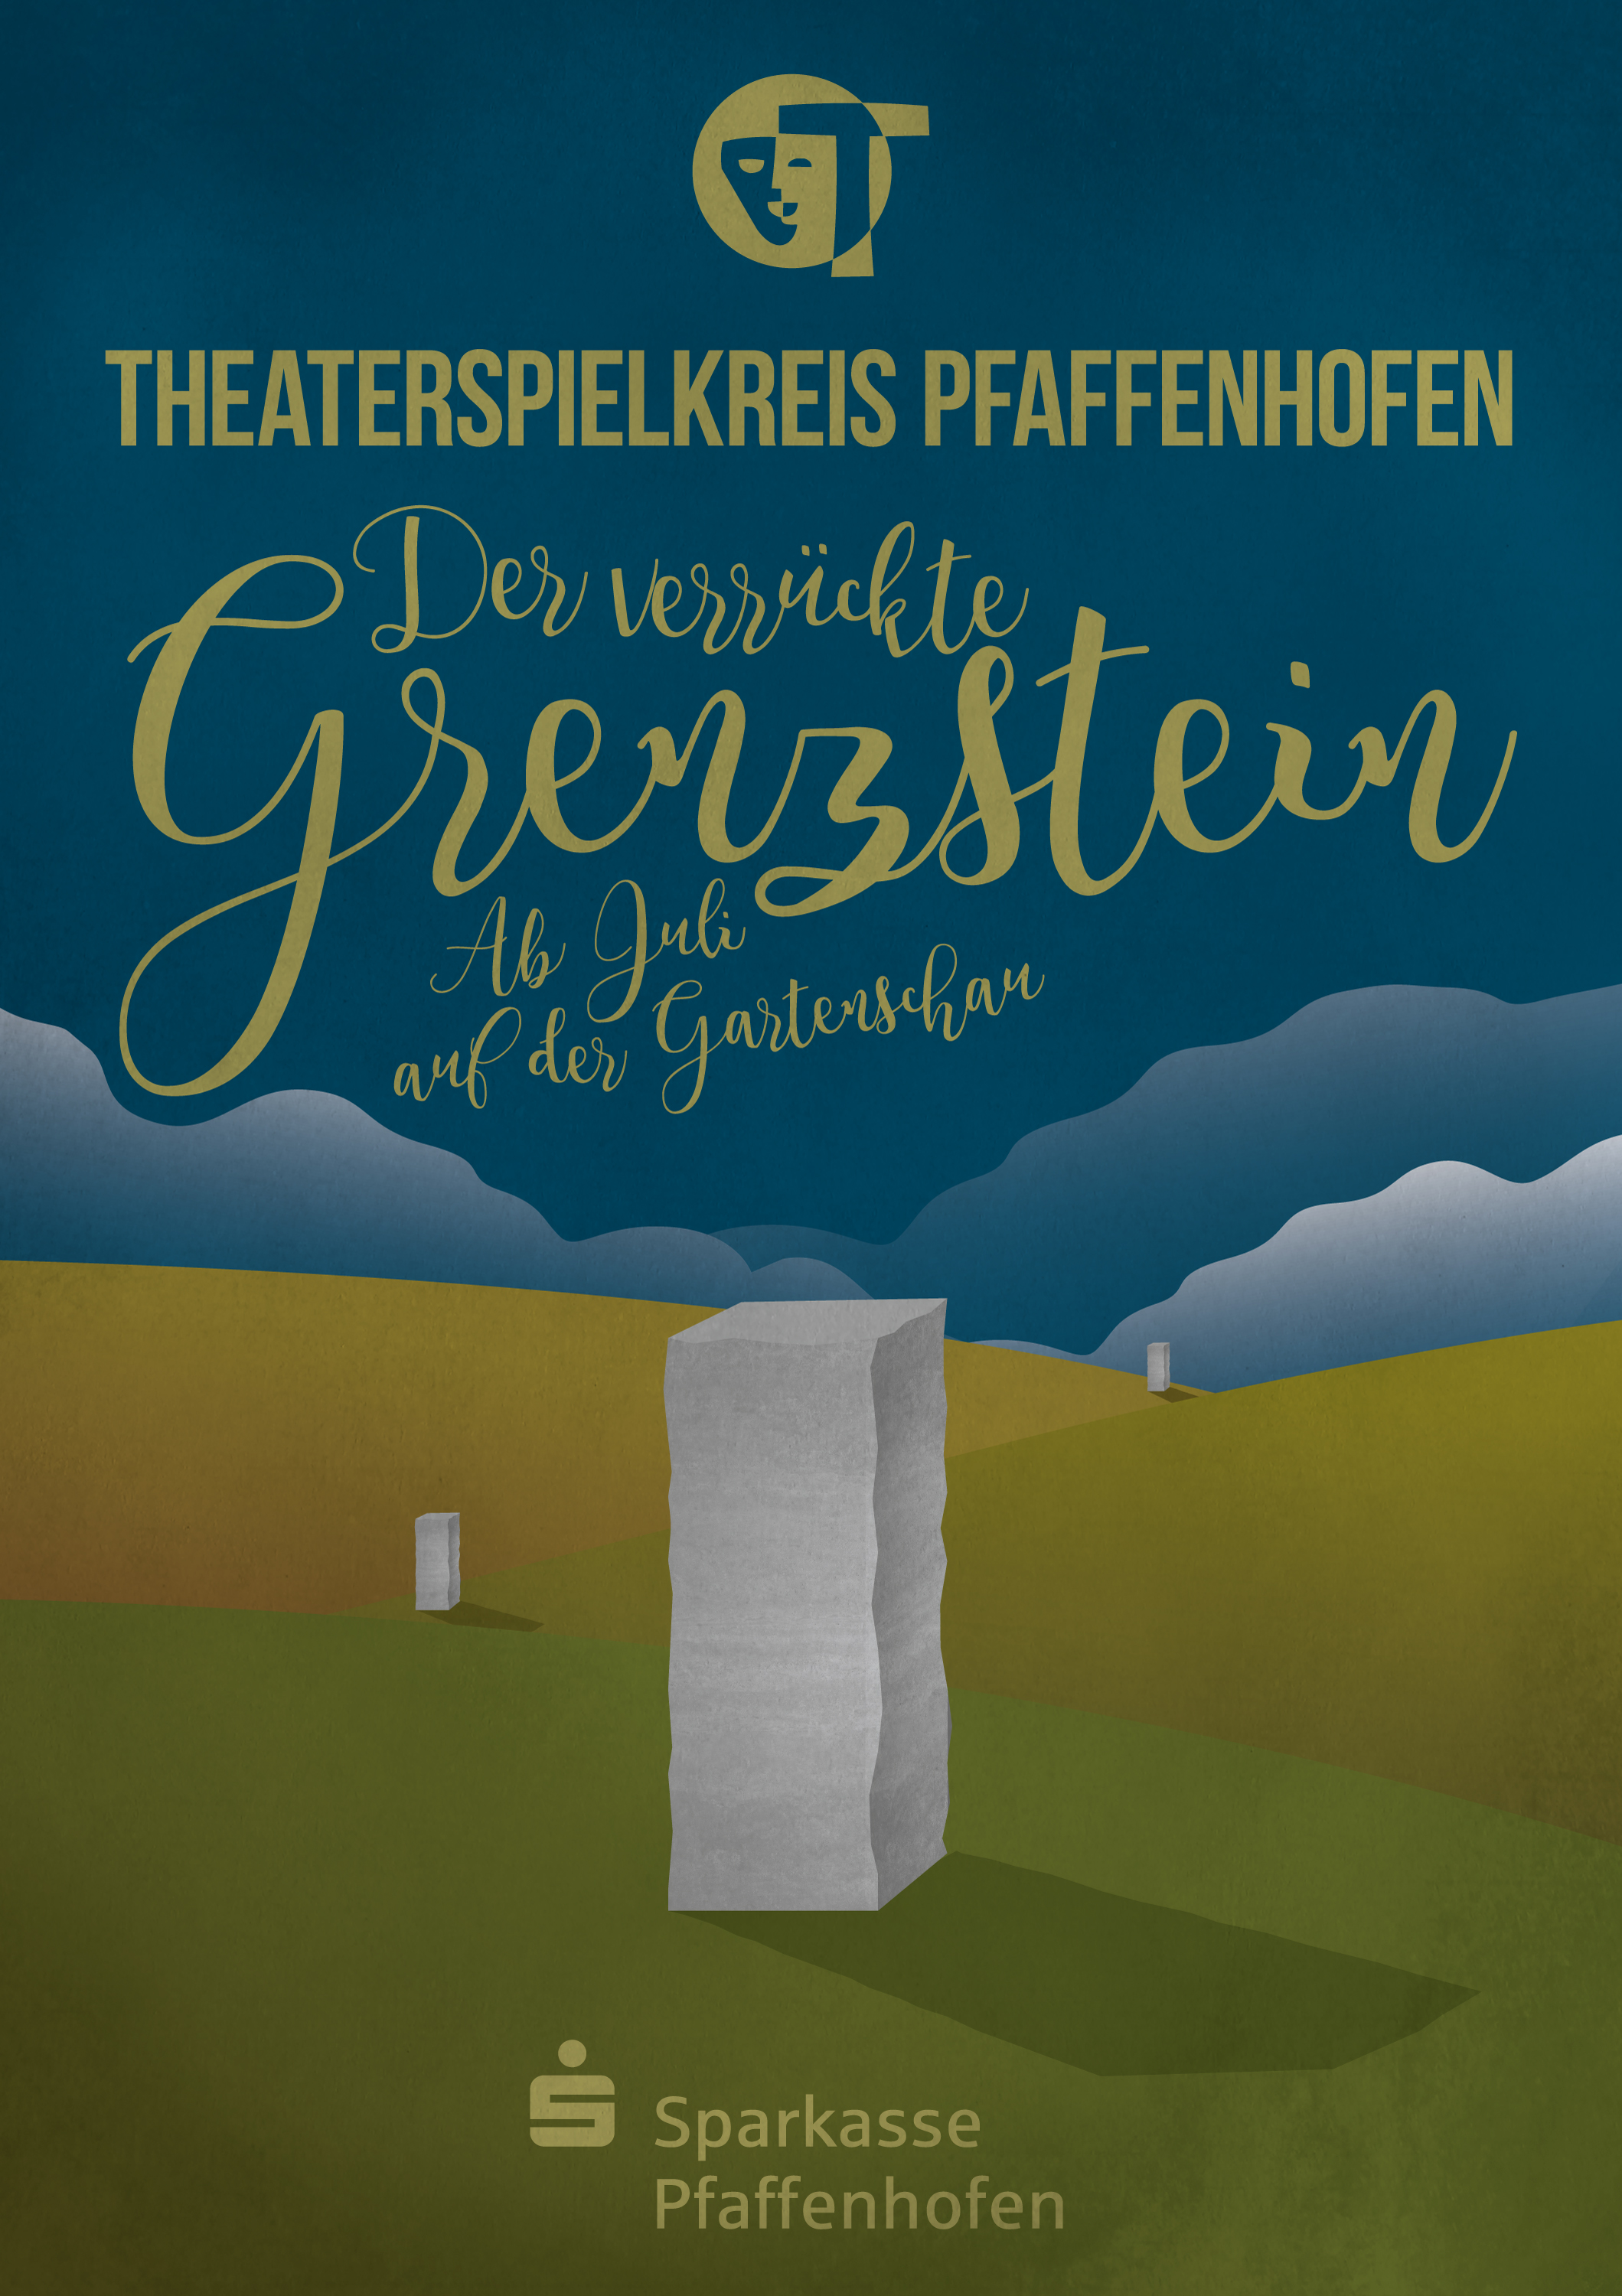 Plakat - Grenzstein